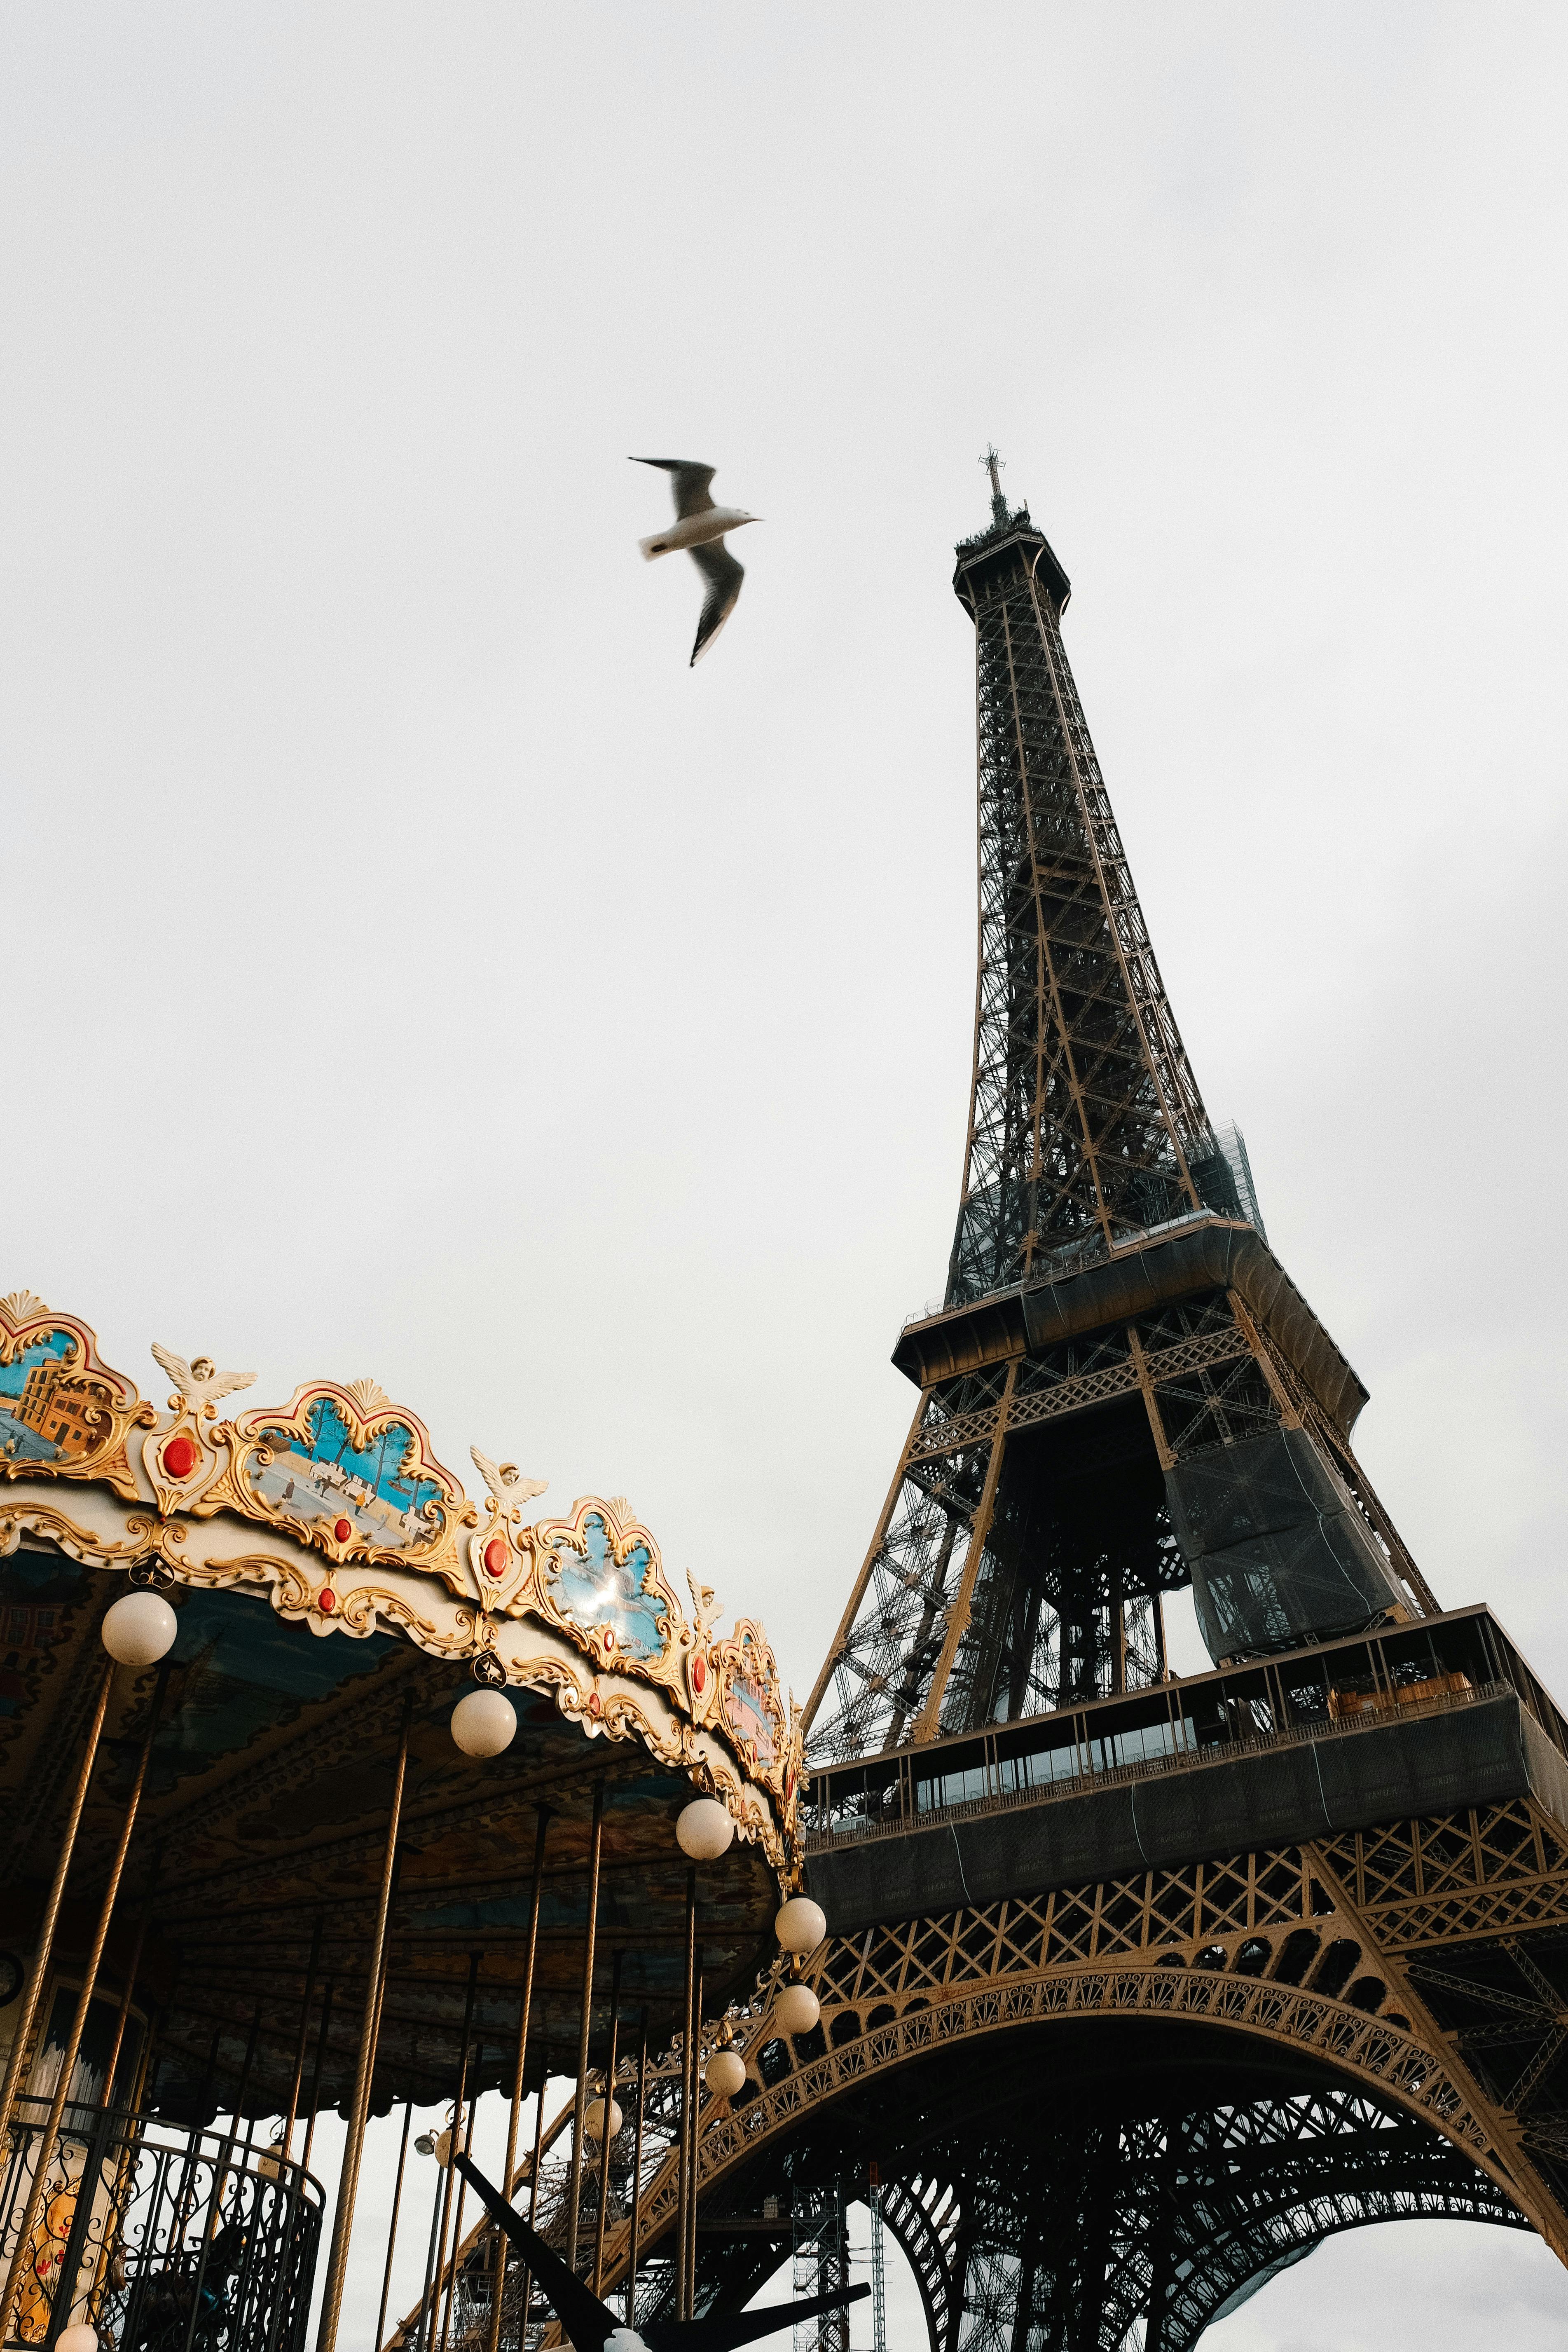 Tháp Eiffel là biểu tượng không thể thiếu khi đến thăm Pháp. Hãy chiêm ngưỡng hình ảnh đẹp của tháp Eiffel, với sự hùng vĩ của nó đến từng chi tiết nhỏ nhất.